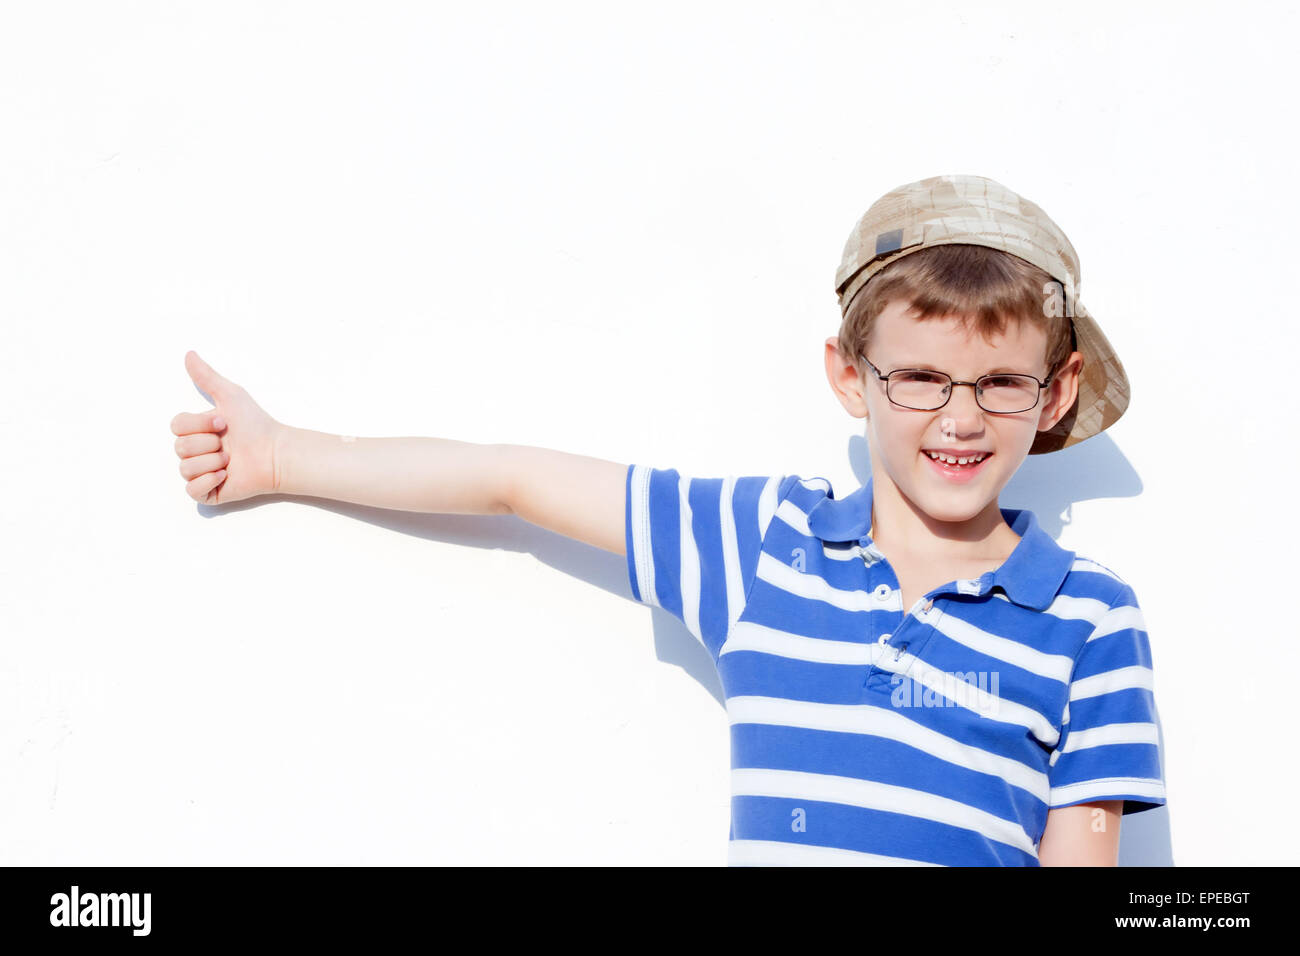 ein kleiner Junge im Alter von 6 bis 8 Jahren mit Brille und eine Kappe zeigt eine positive gesture.portrait Stockfoto